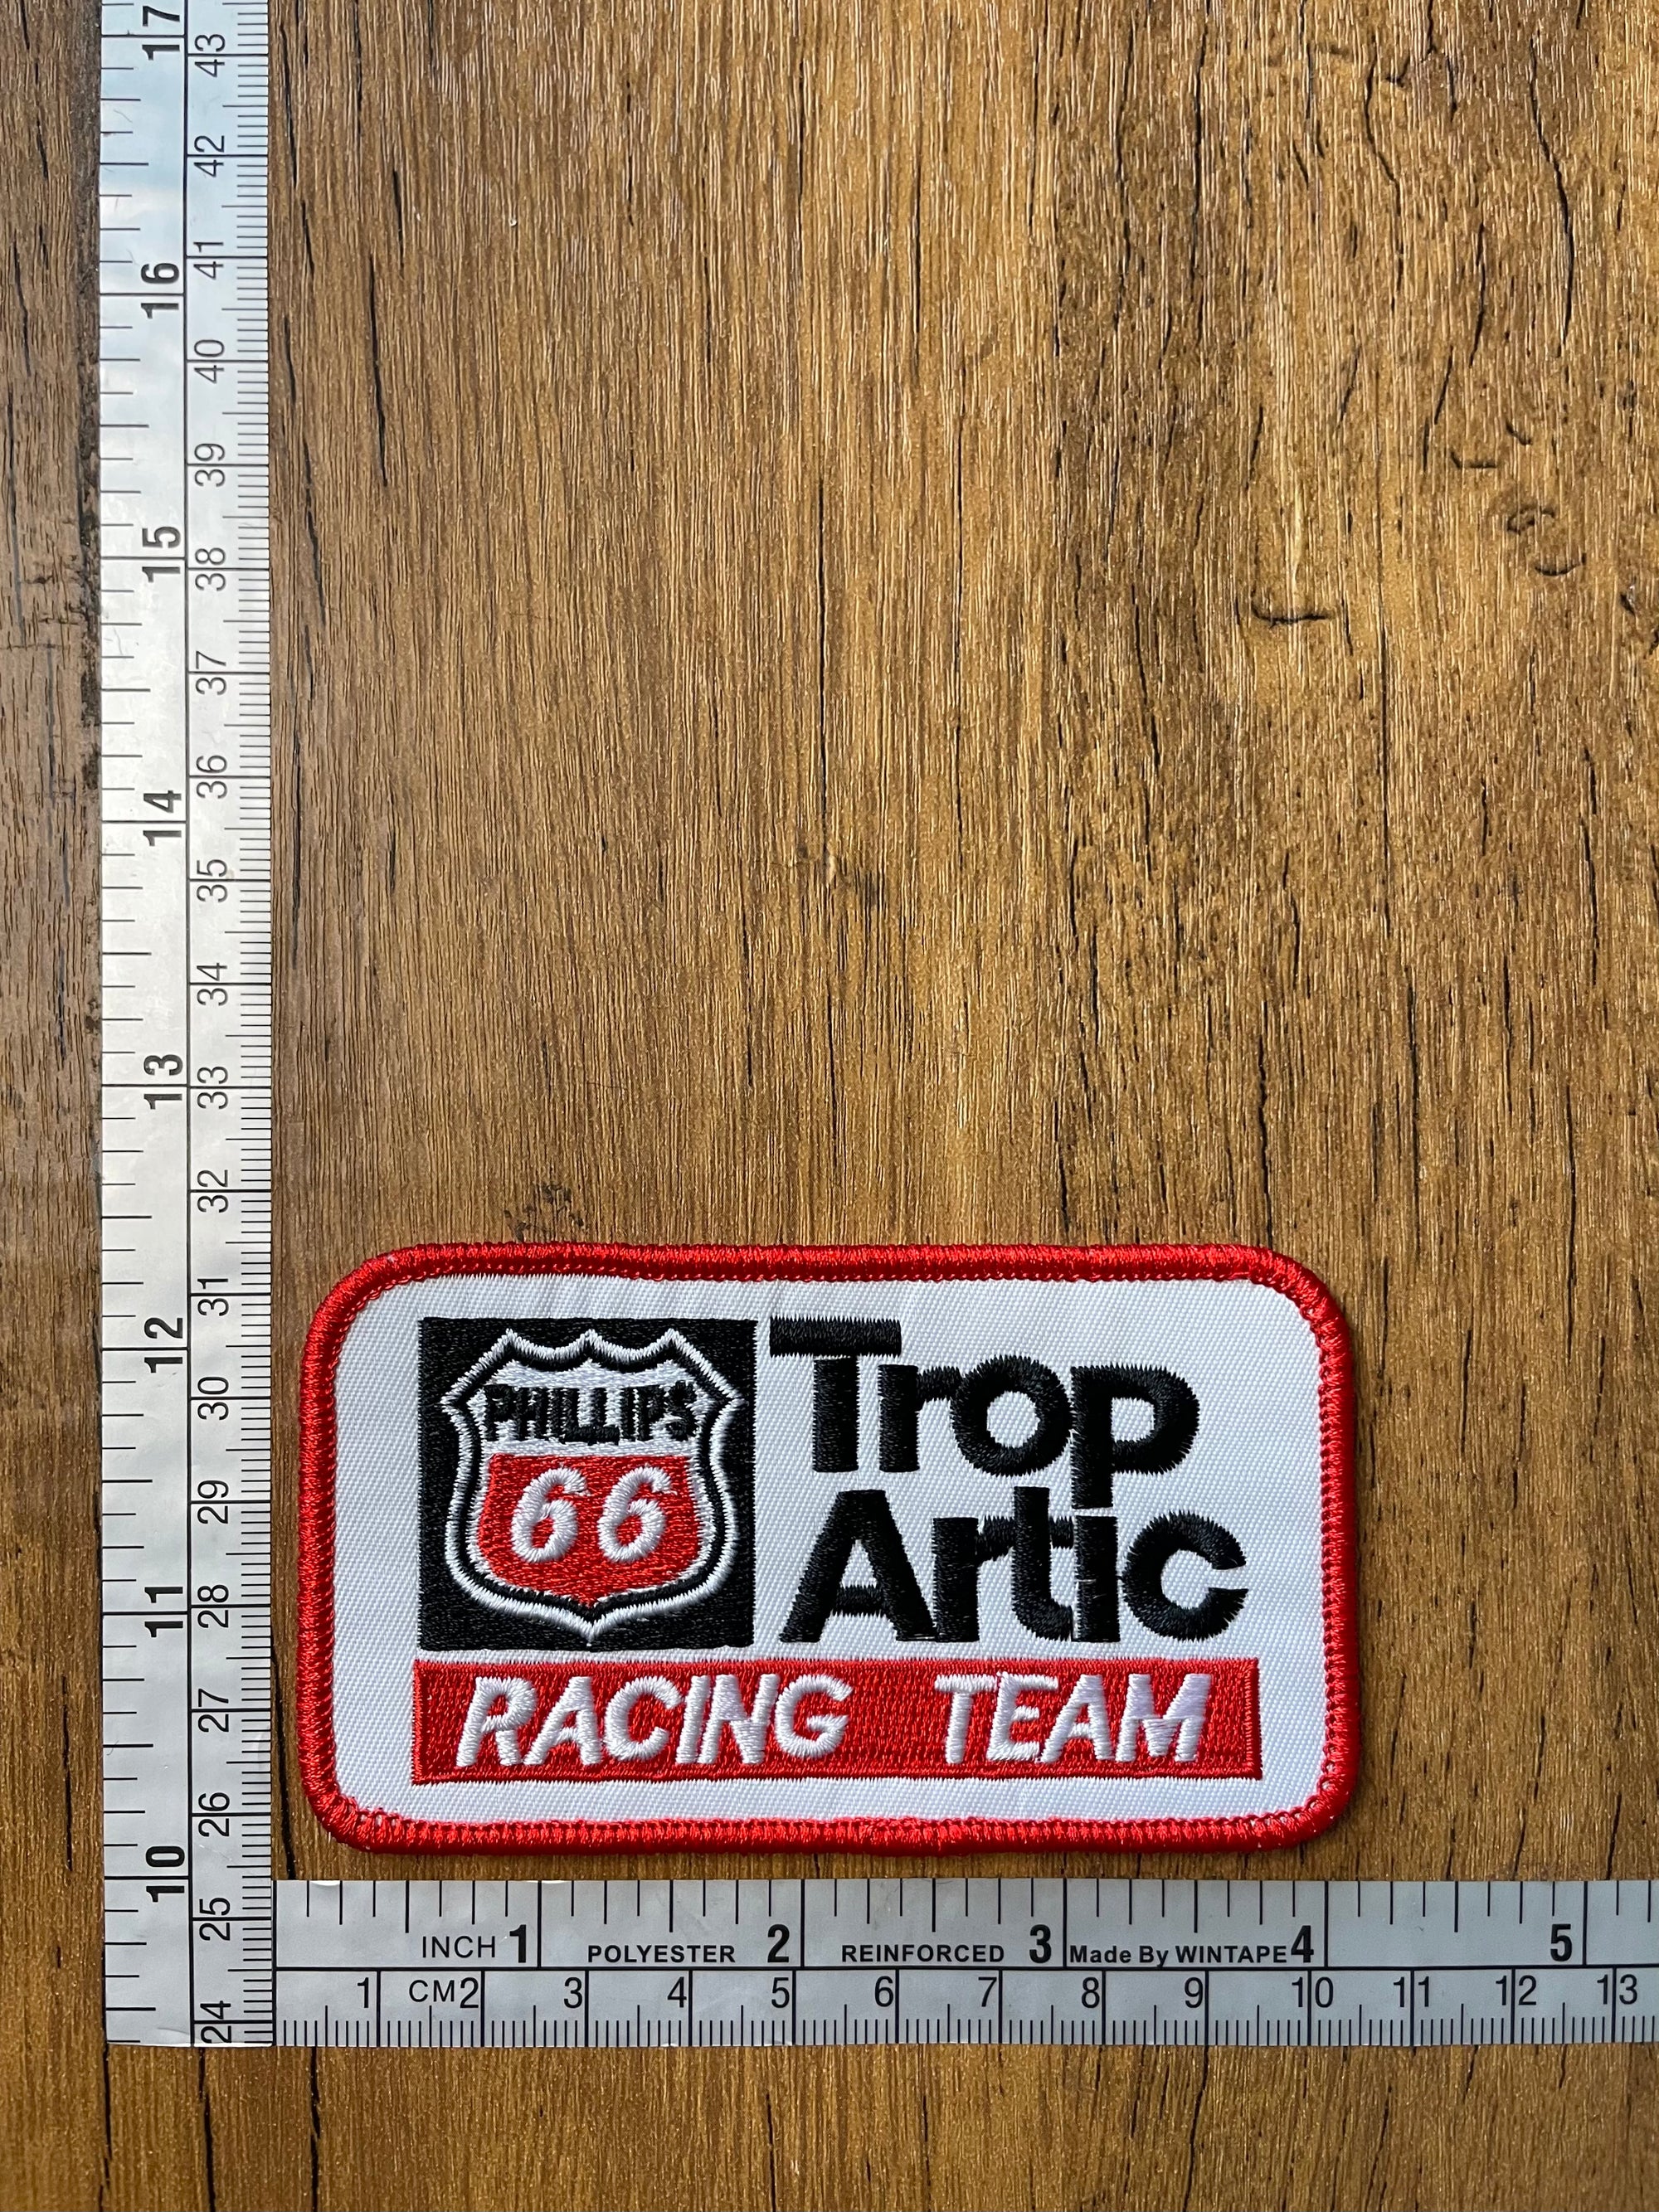 Phillips 66 Trop Artic Racing Team